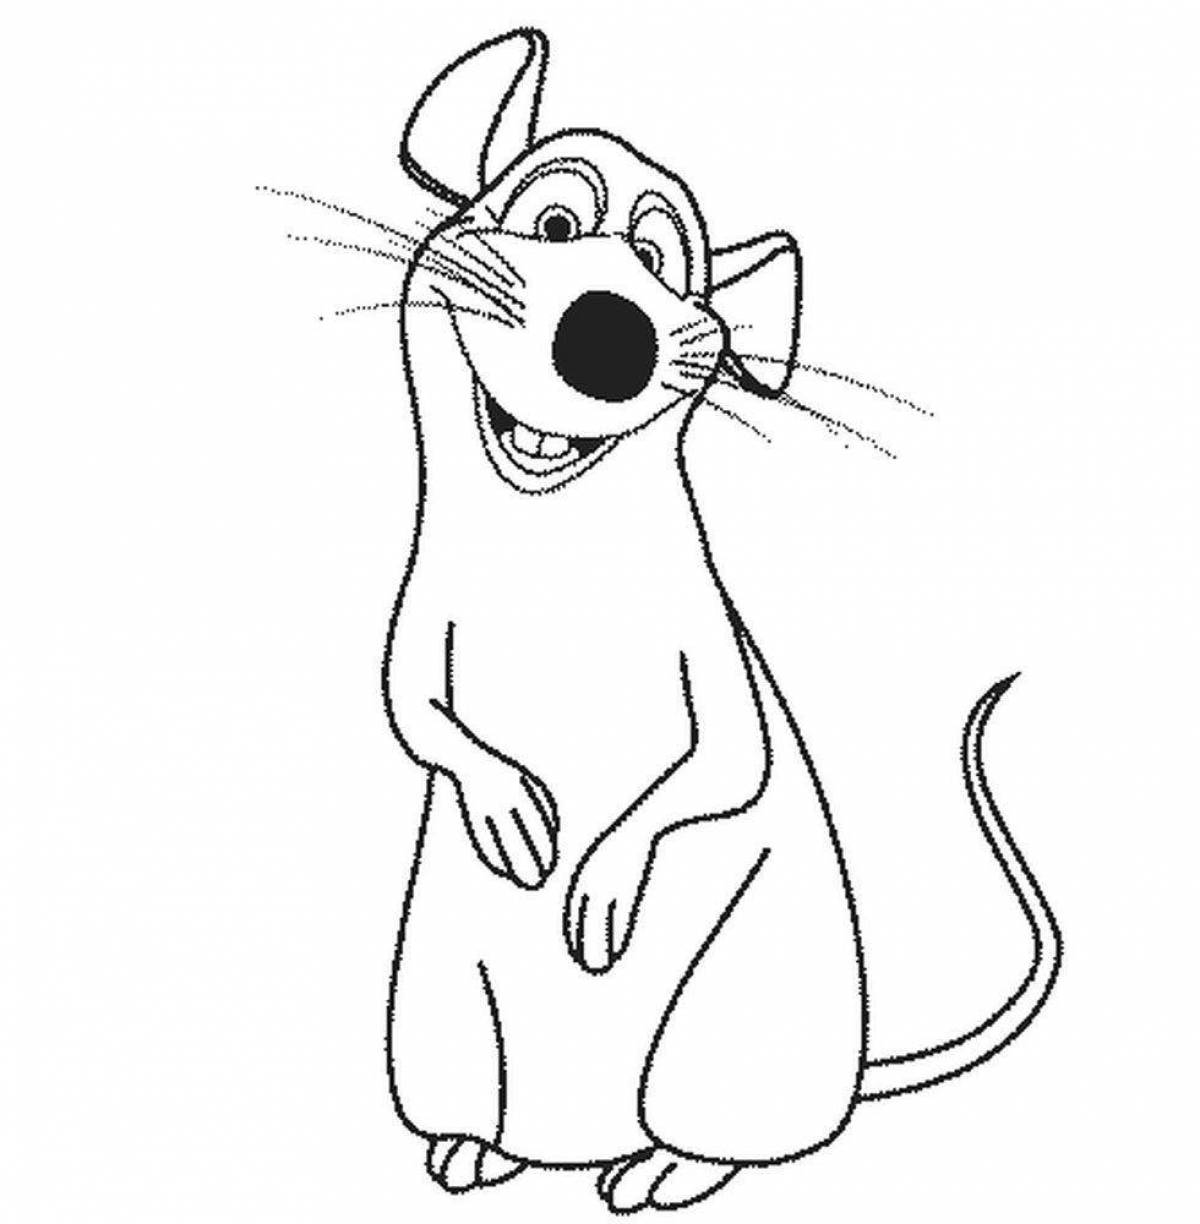 Увлекательная крысиная раскраска для детей